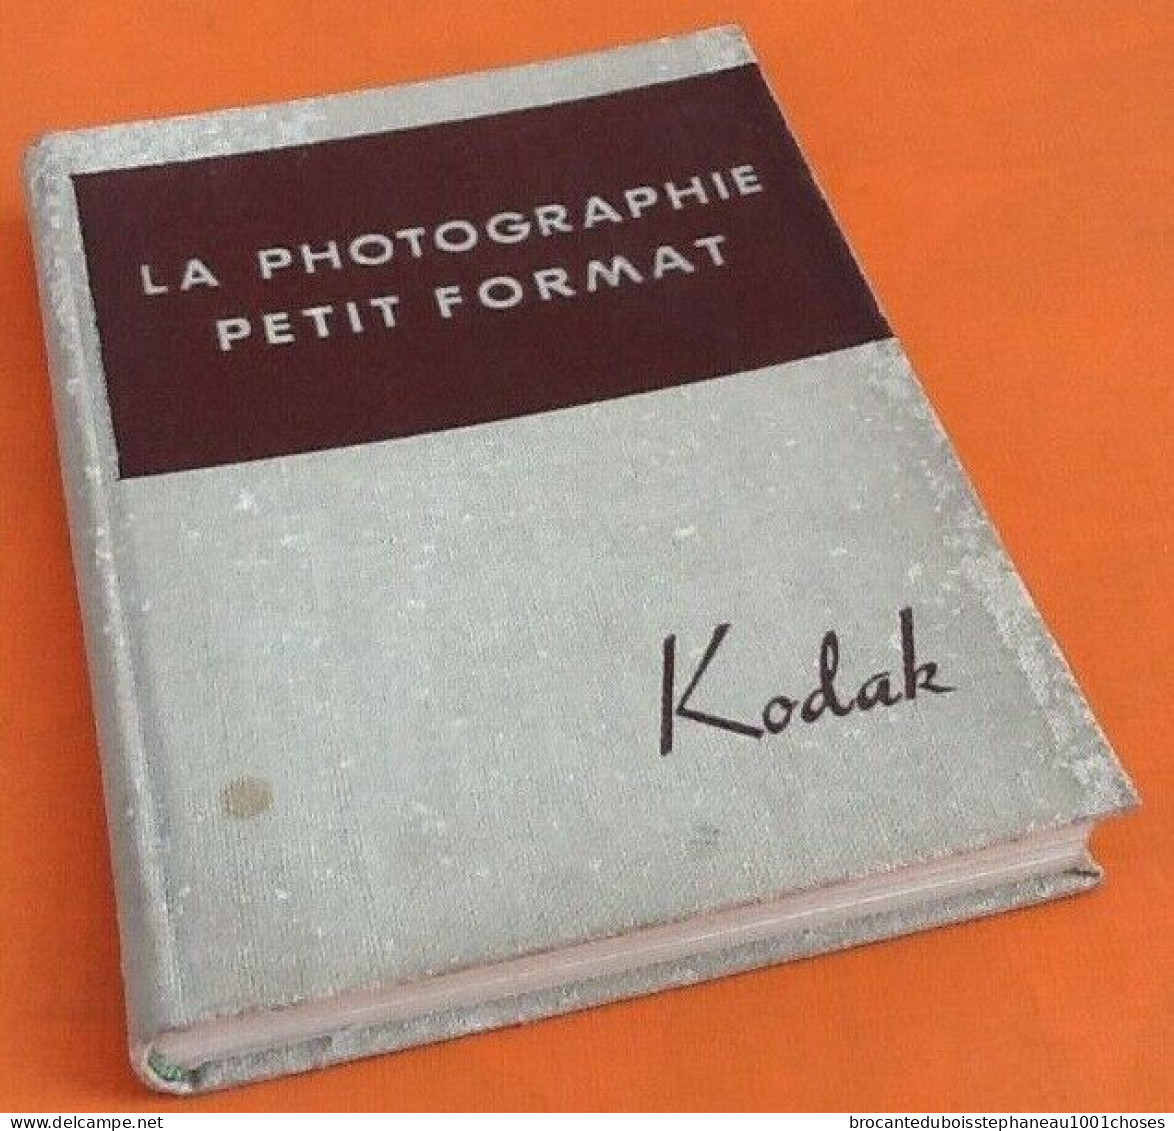 Kodak La Photographie petit format (1939)